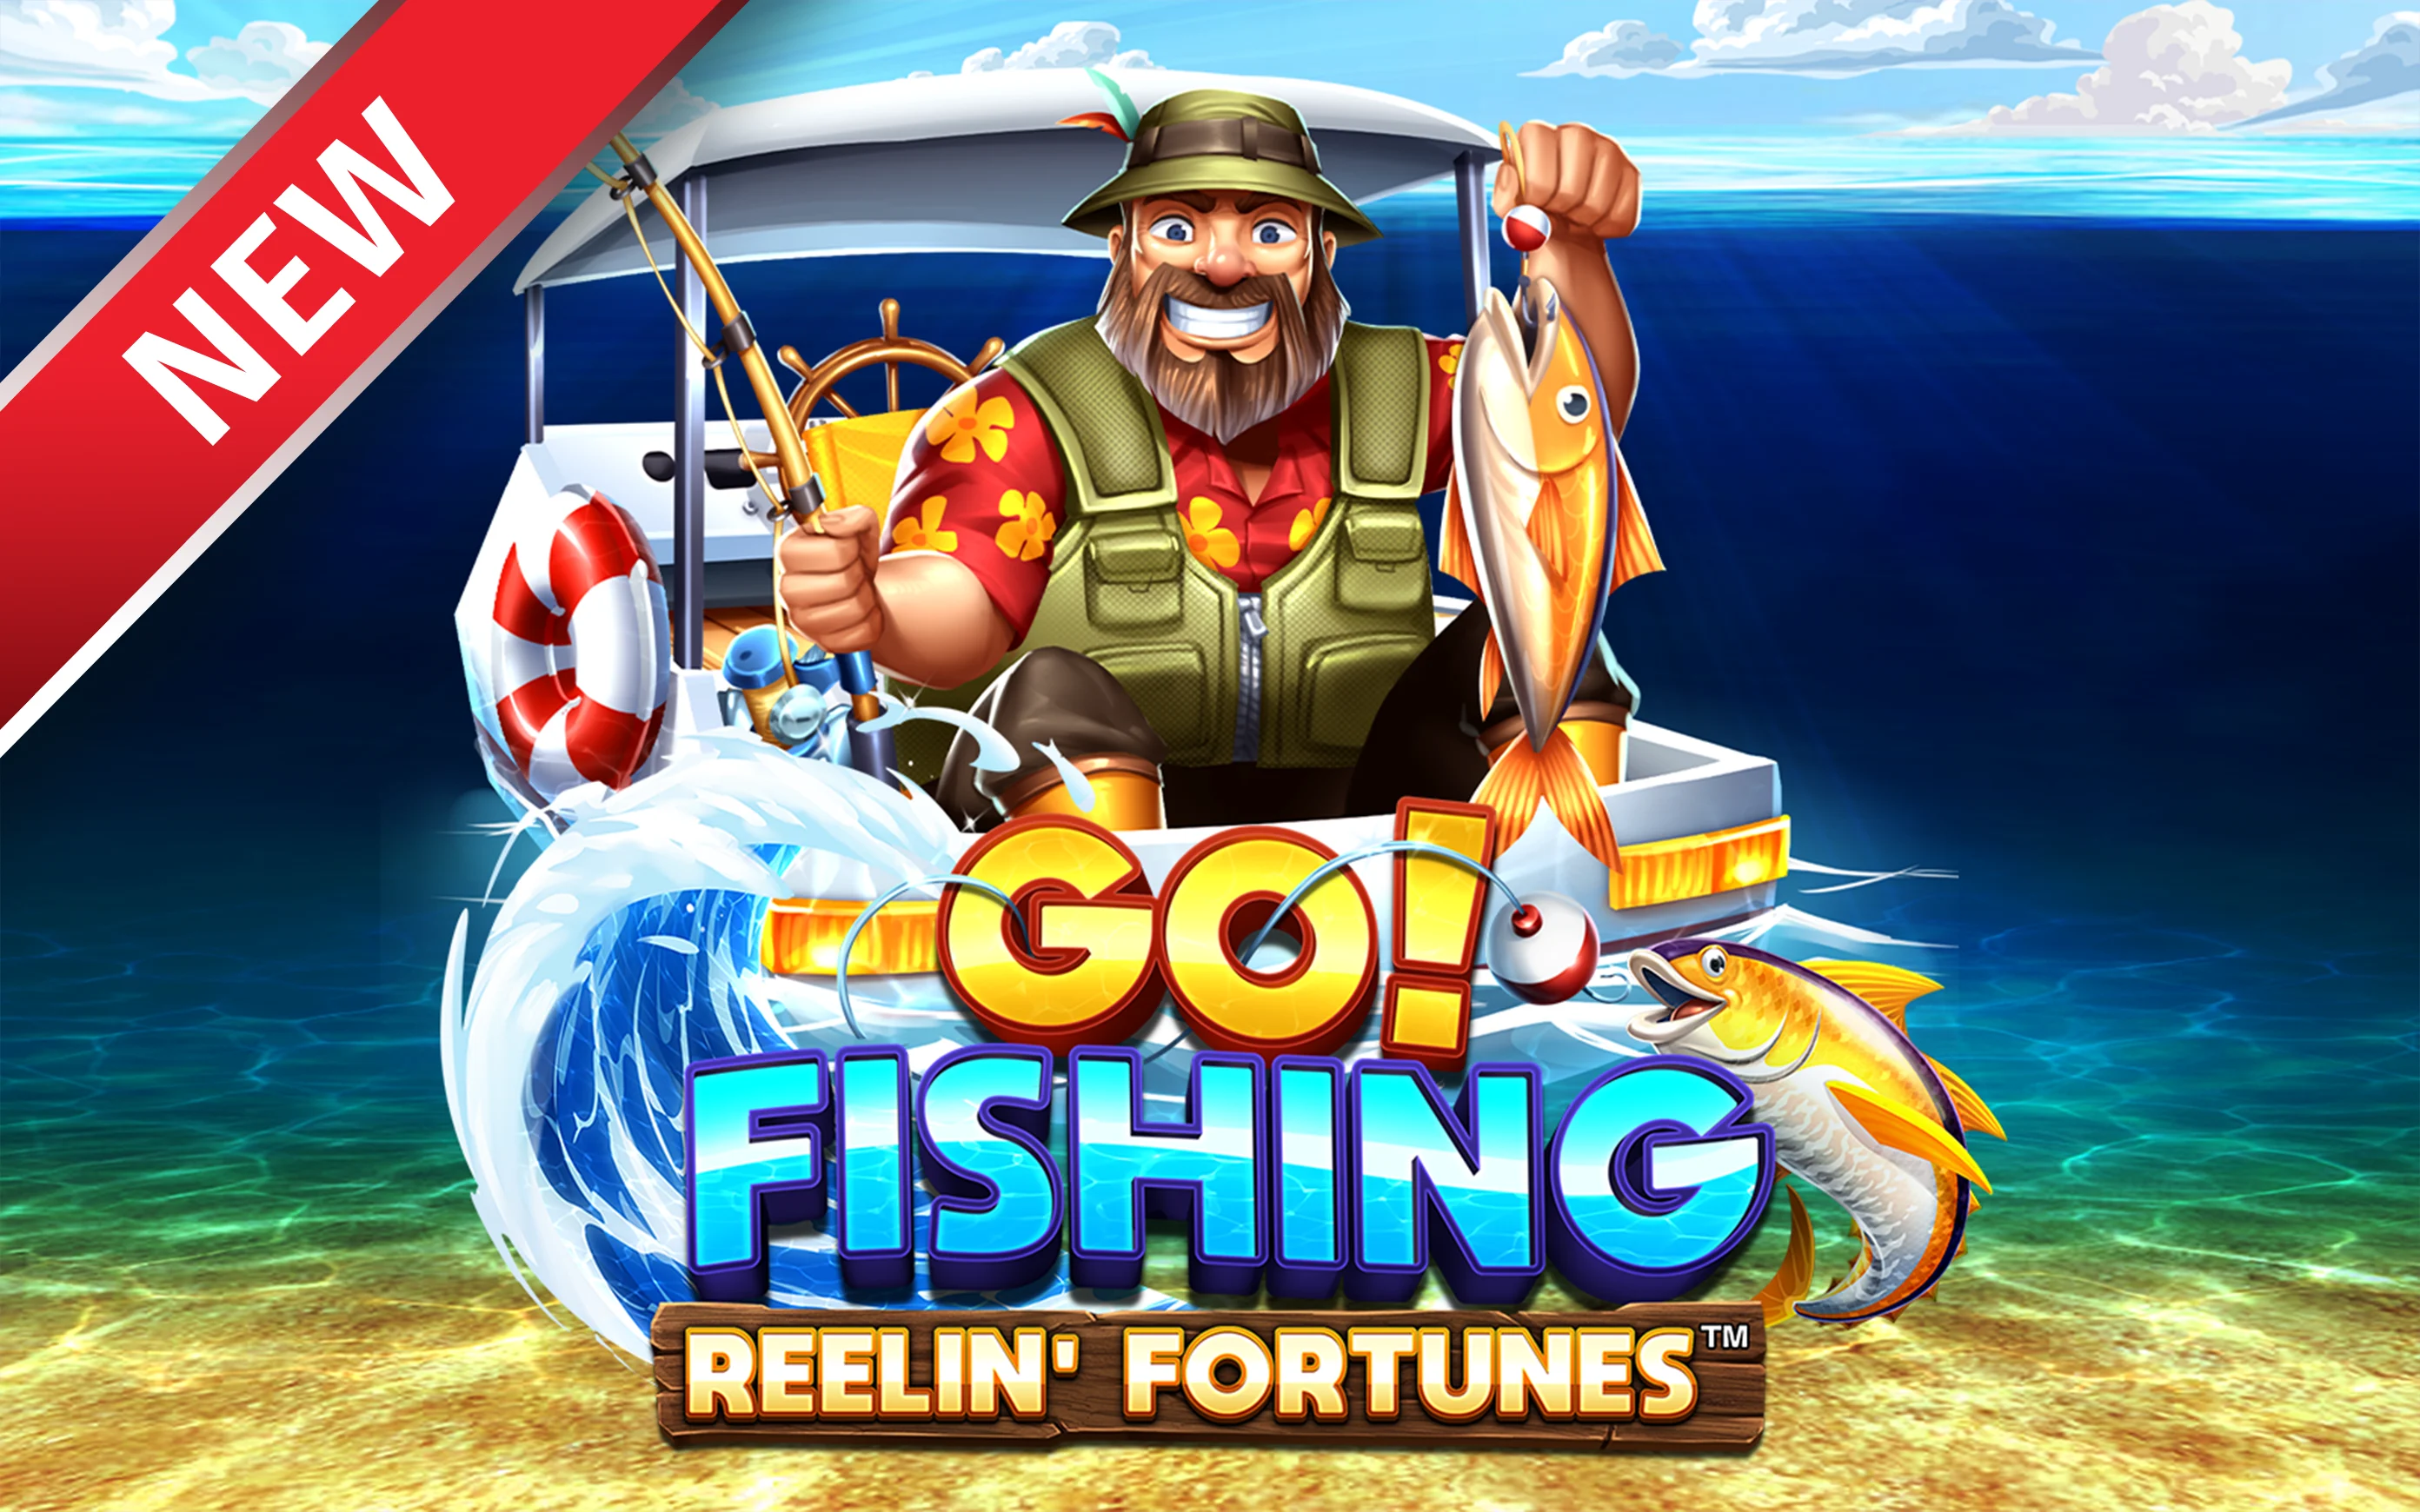 Gioca a Go! Fishing: Reelin' Fortunes™ sul casino online Starcasino.be